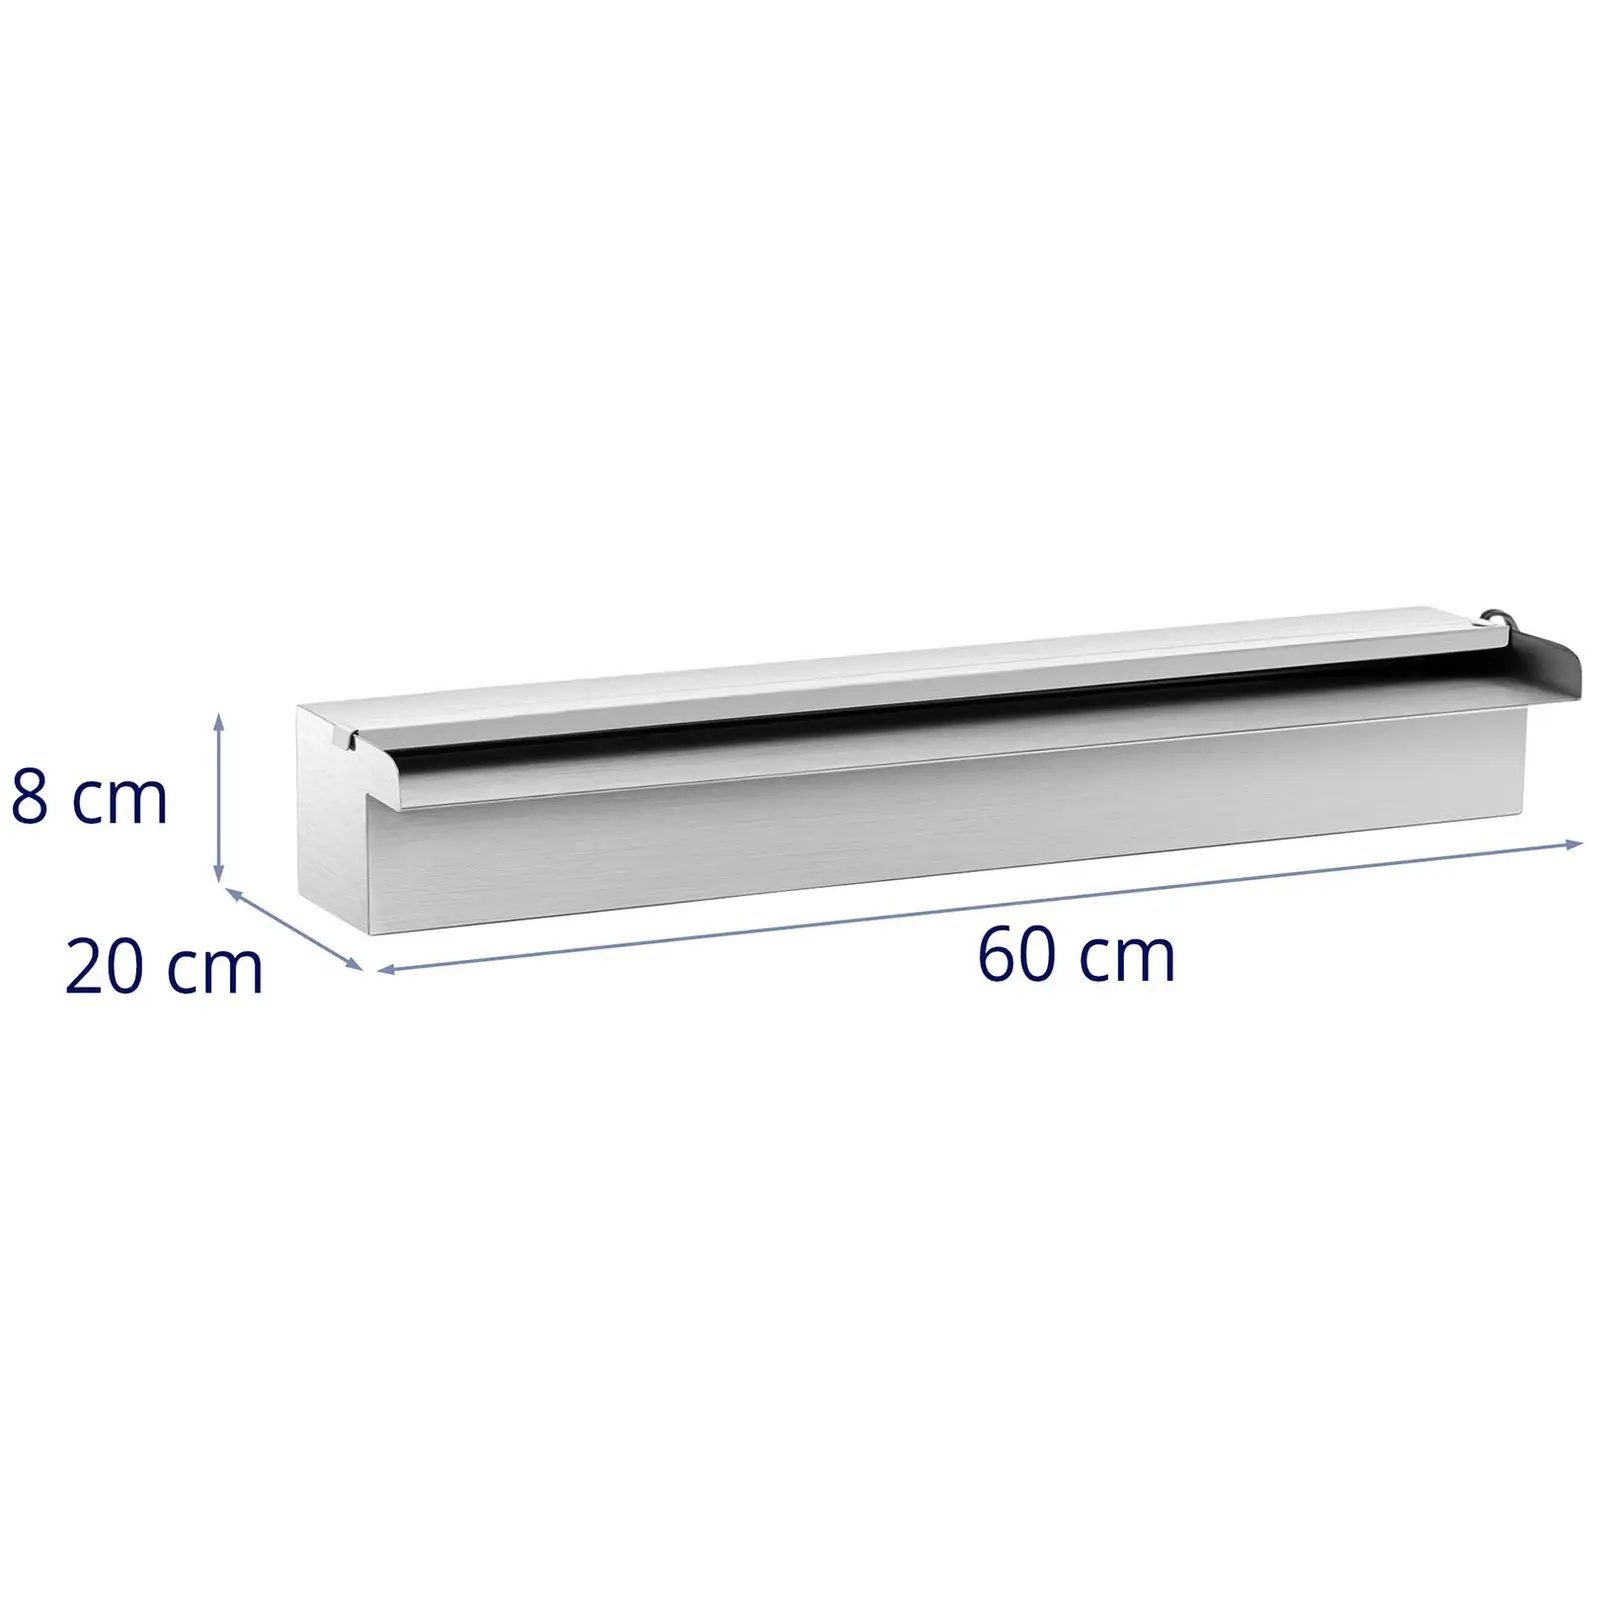 Chrlič vody - 60 cm - LED osvětlení - modrá/bílá - otevřený vývod vody